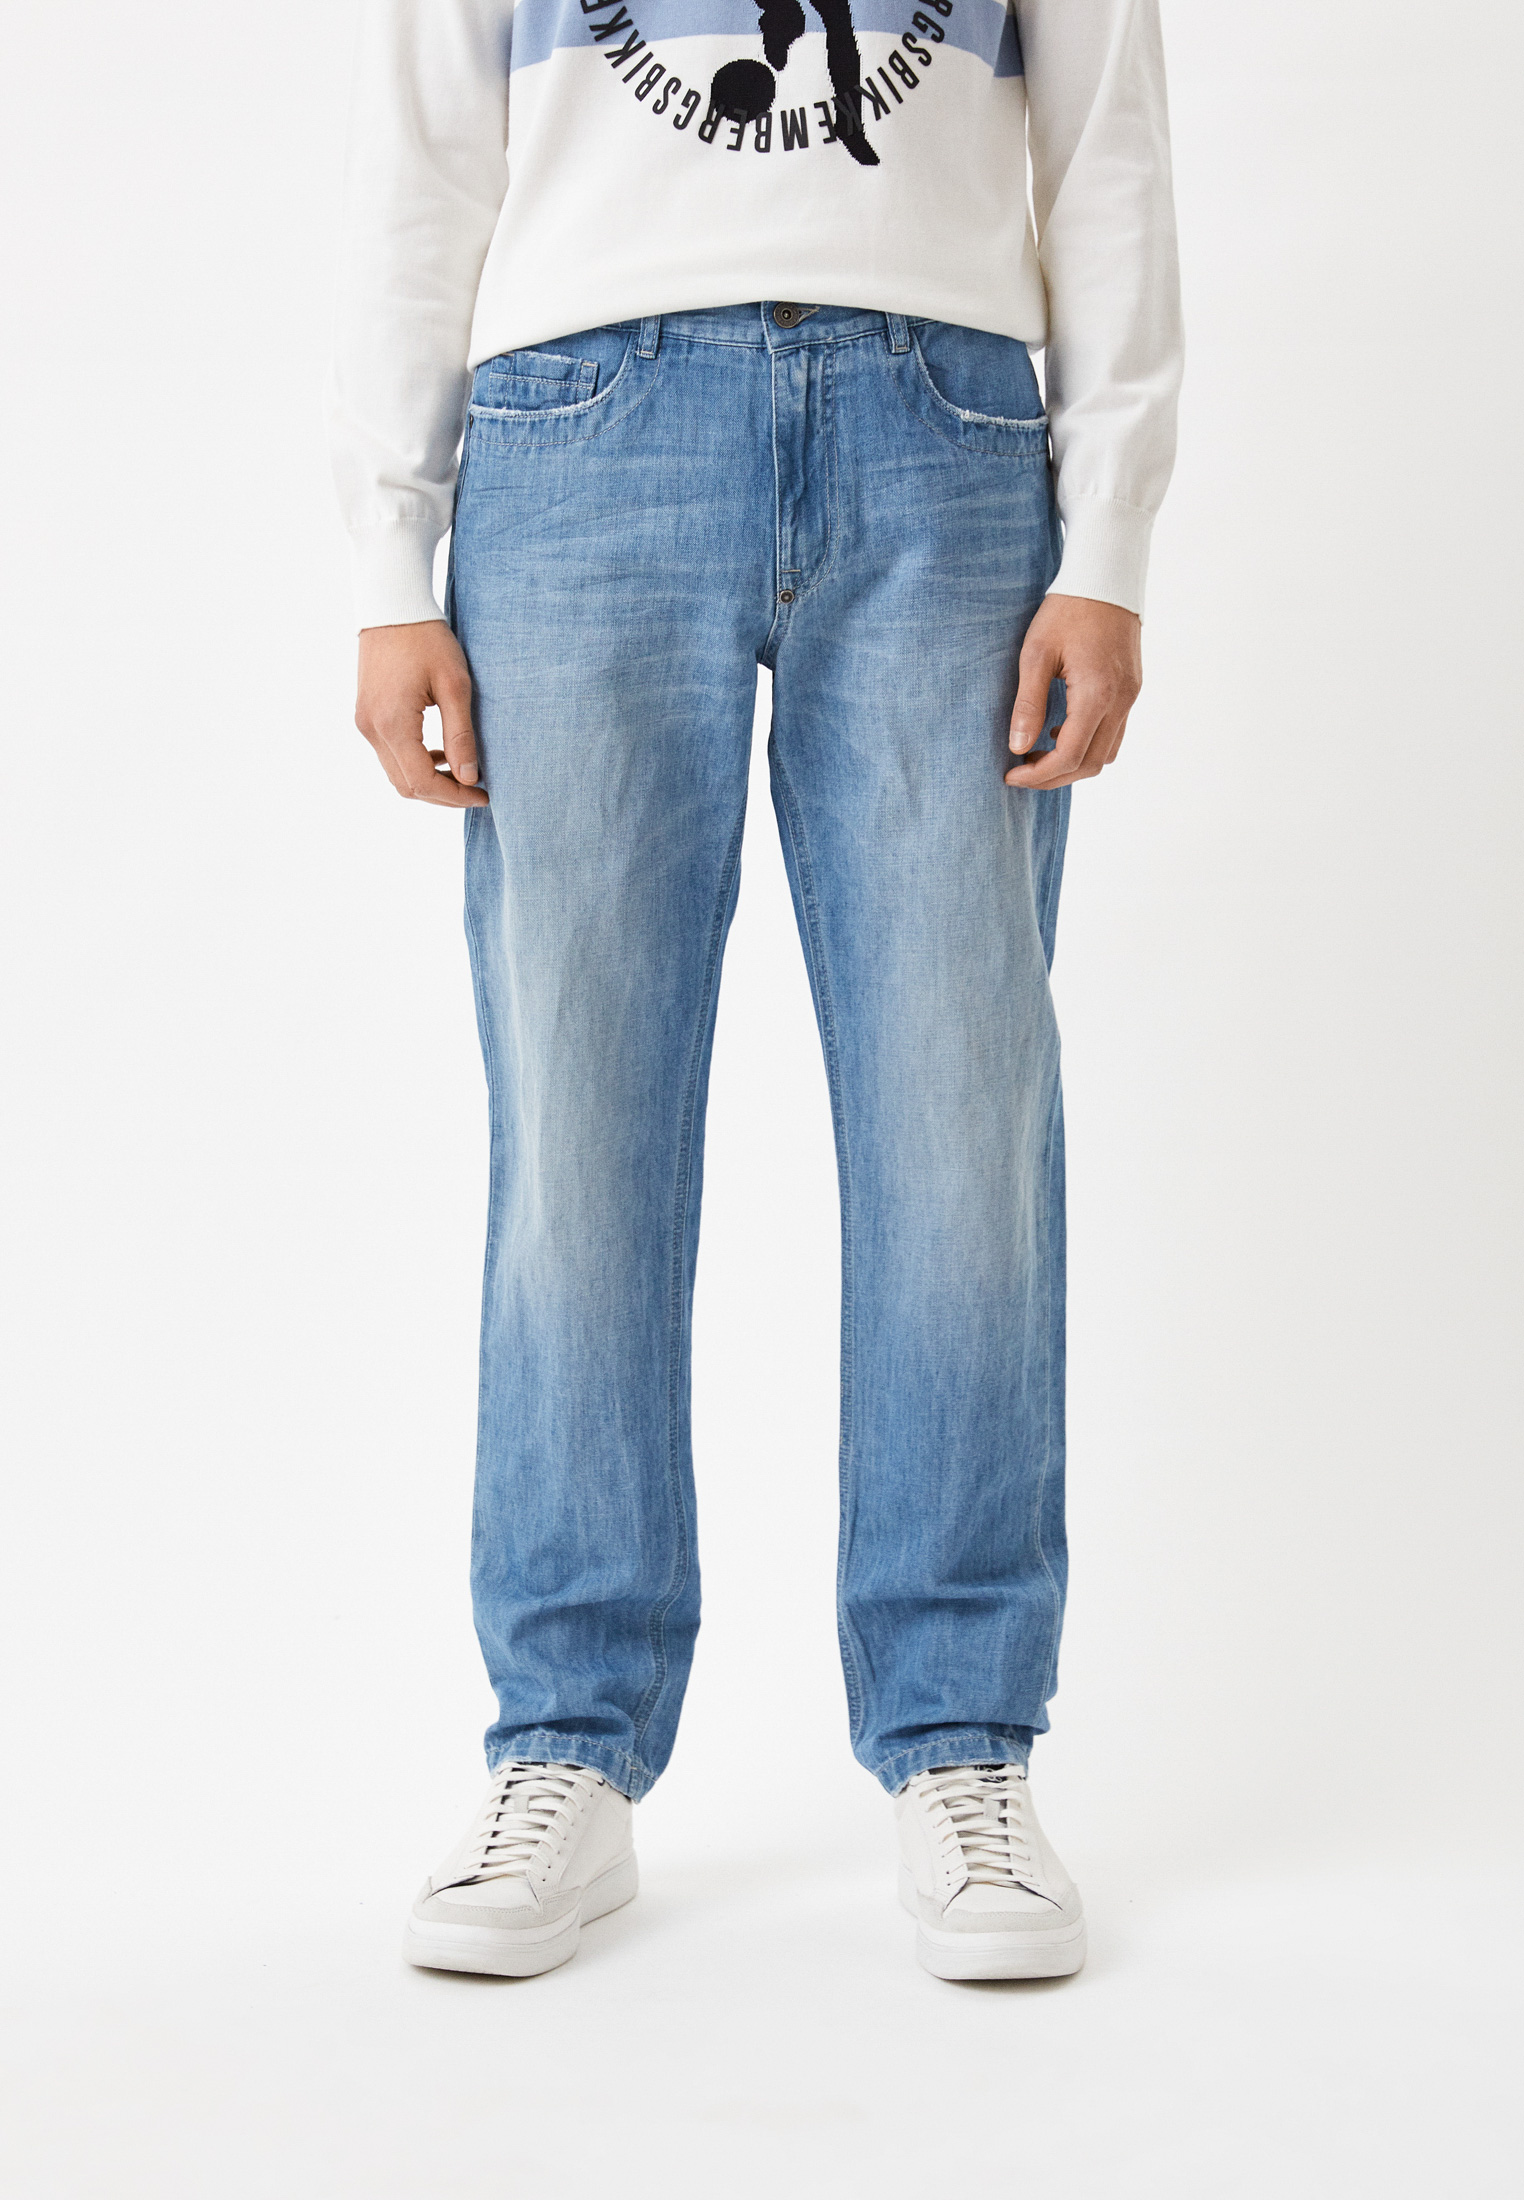 Мужские прямые джинсы Bikkembergs (Биккембергс) CQ10222T117A: изображение 5